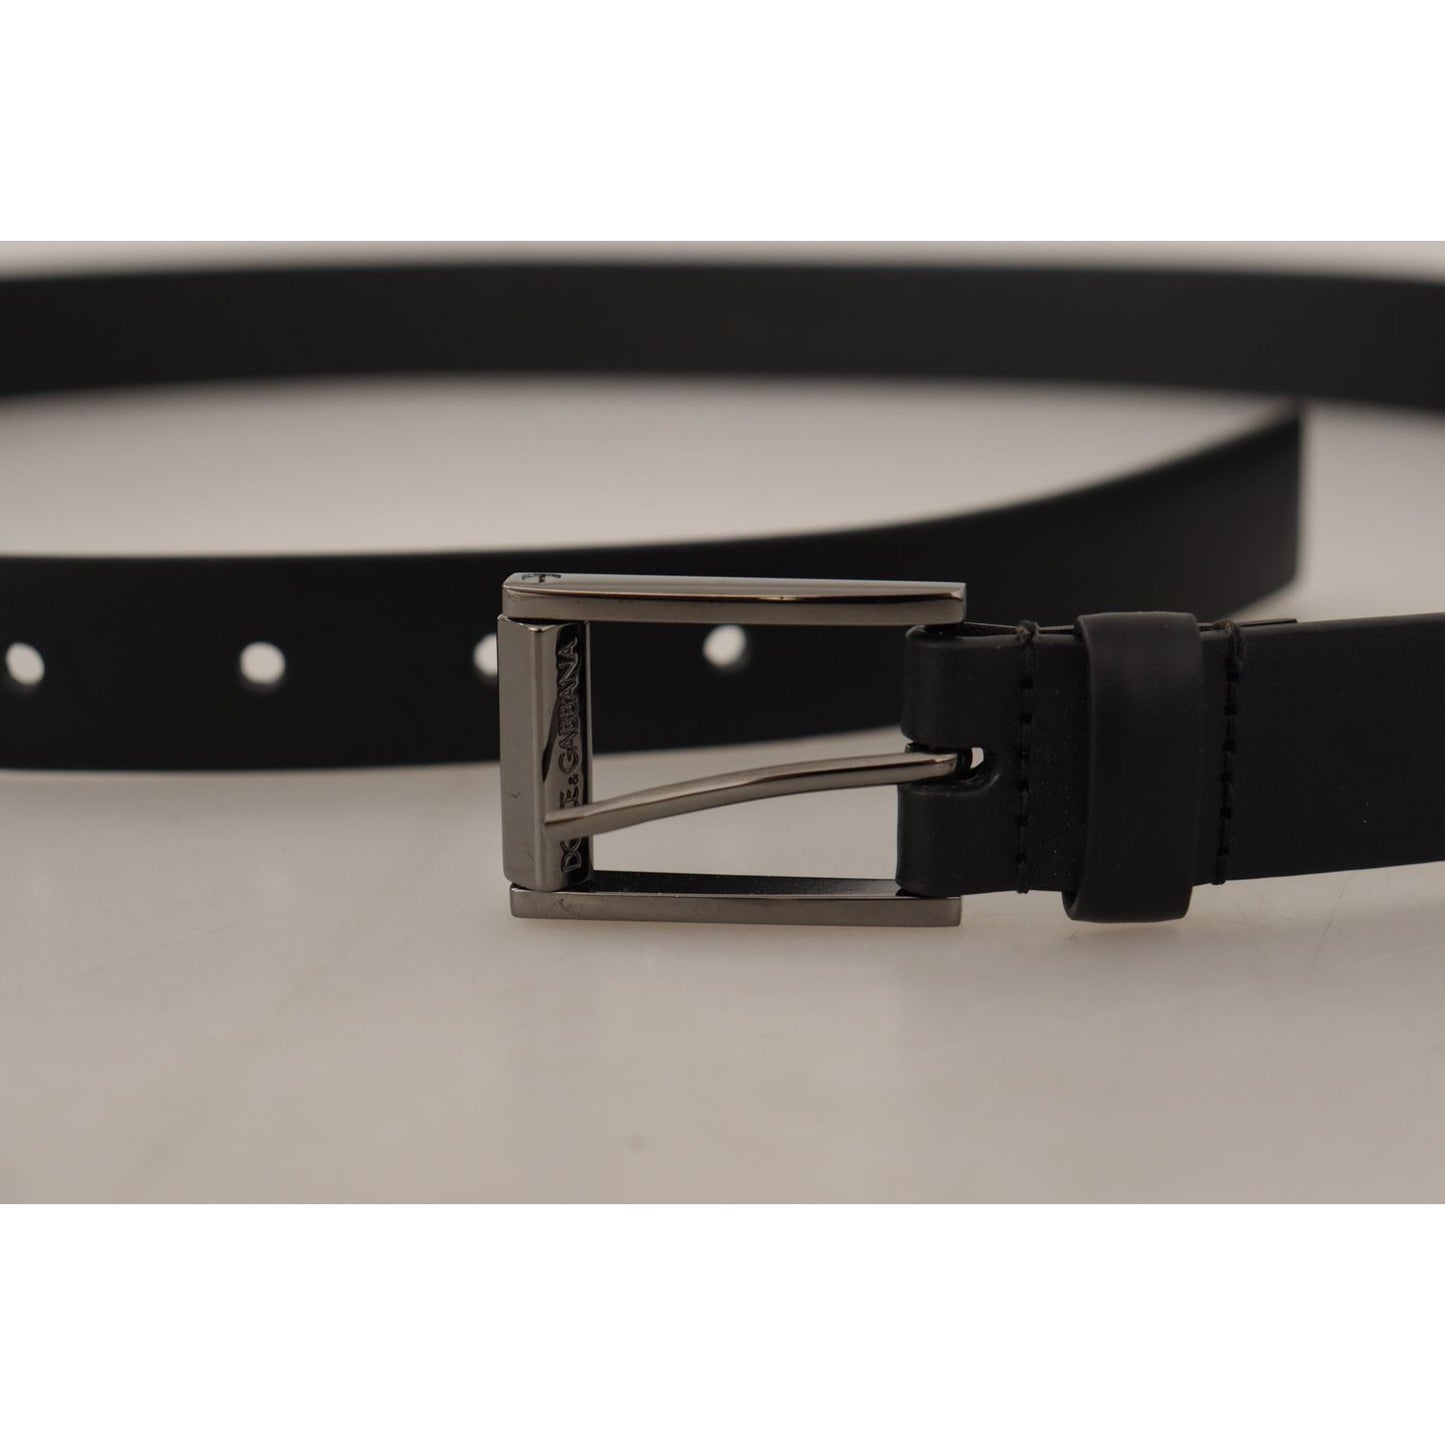 Dolce & Gabbana Elegant Black Leather Belt with Metal Buckle black-calf-leather-vintage-steel-logo-buckle-belt IMG_5433-scaled-7931a4f8-e5d.jpg